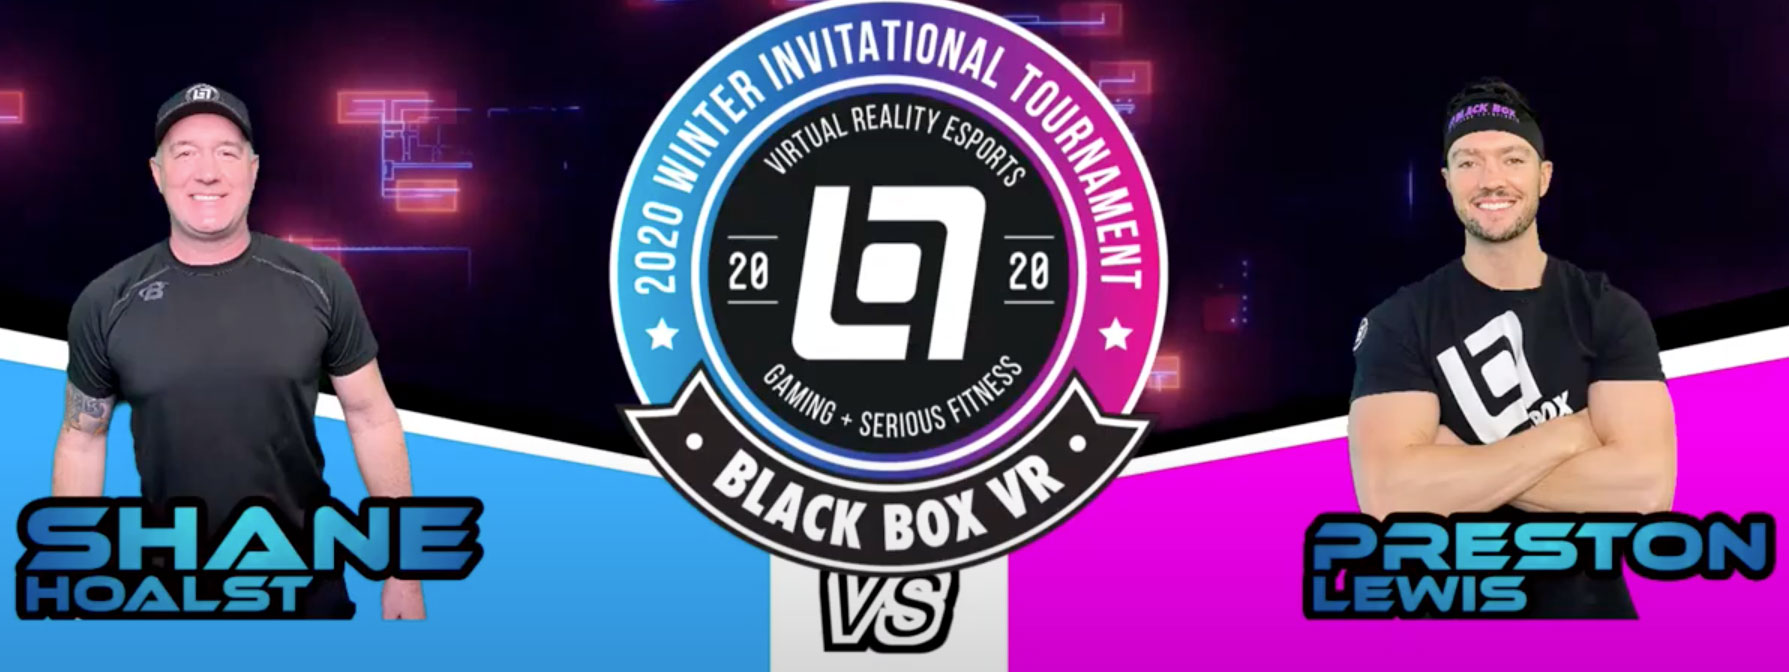 Preston vs Shane Black Box VR Sweet 16 Tournament Battle